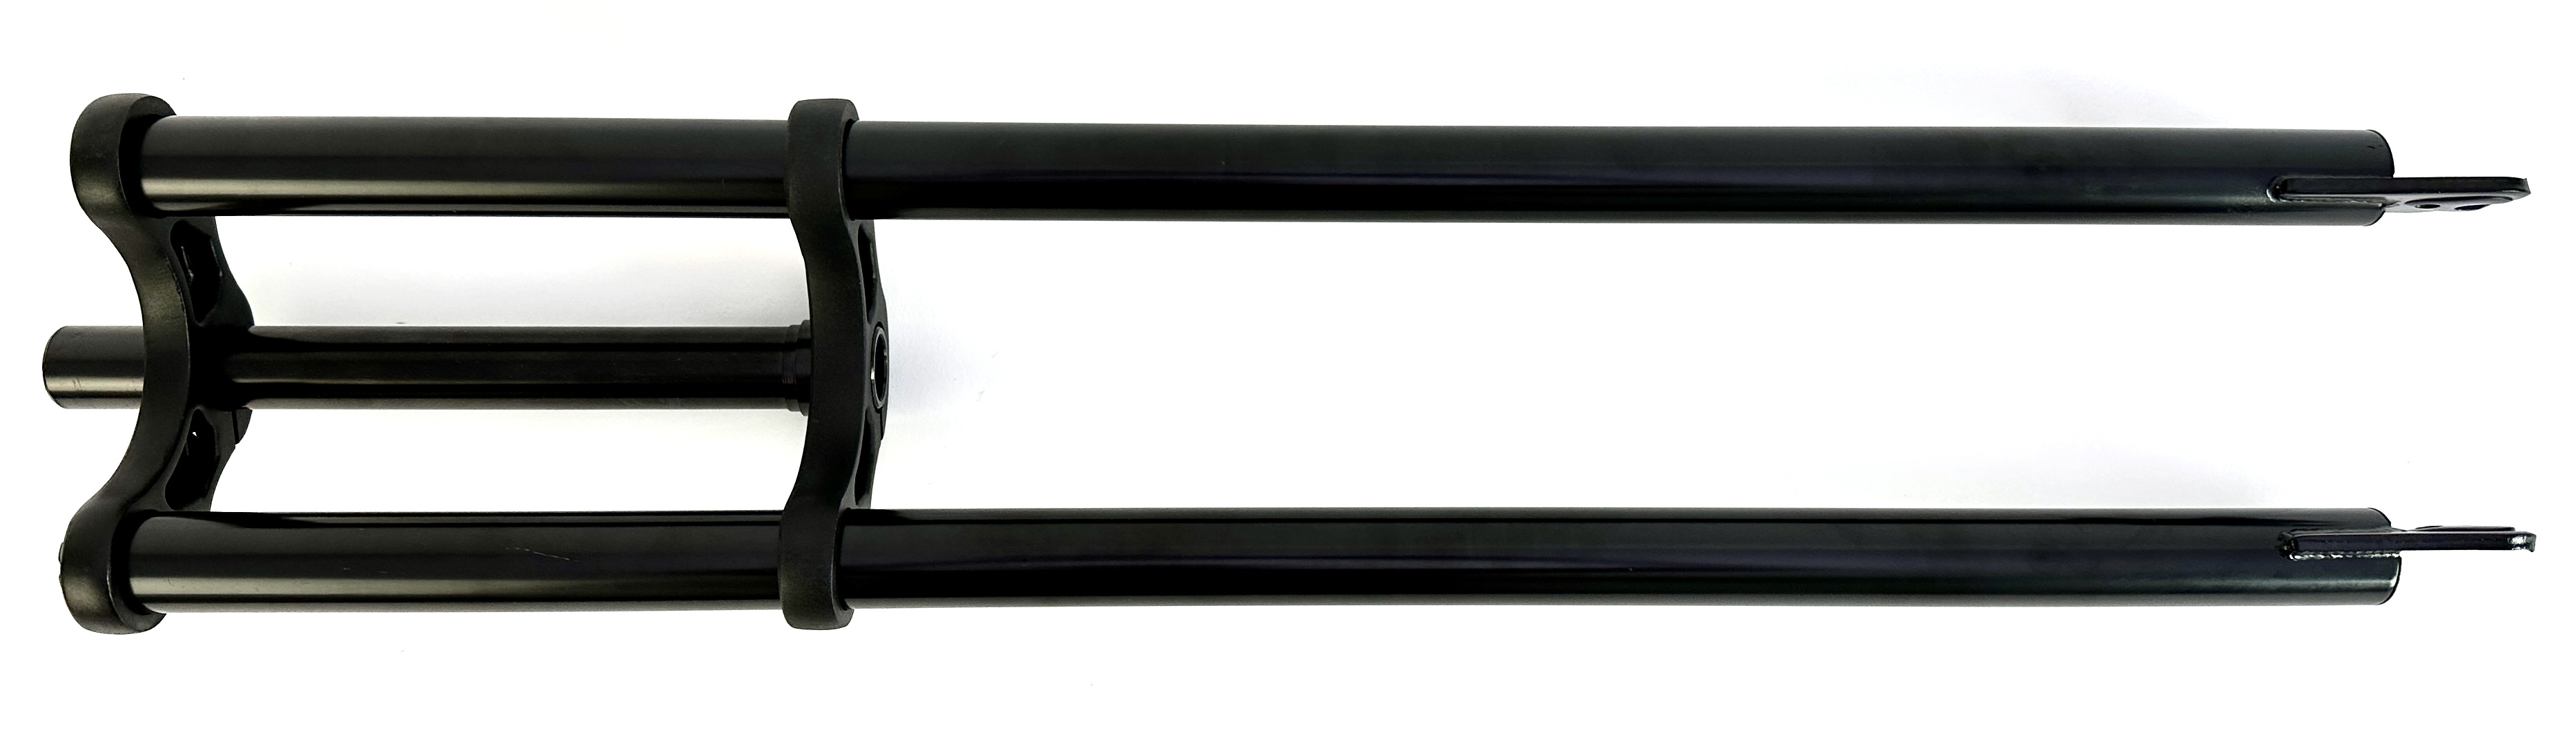 8-Forcella a doppio ponte 750 mm nero con stelo da 1 1/8 pollice